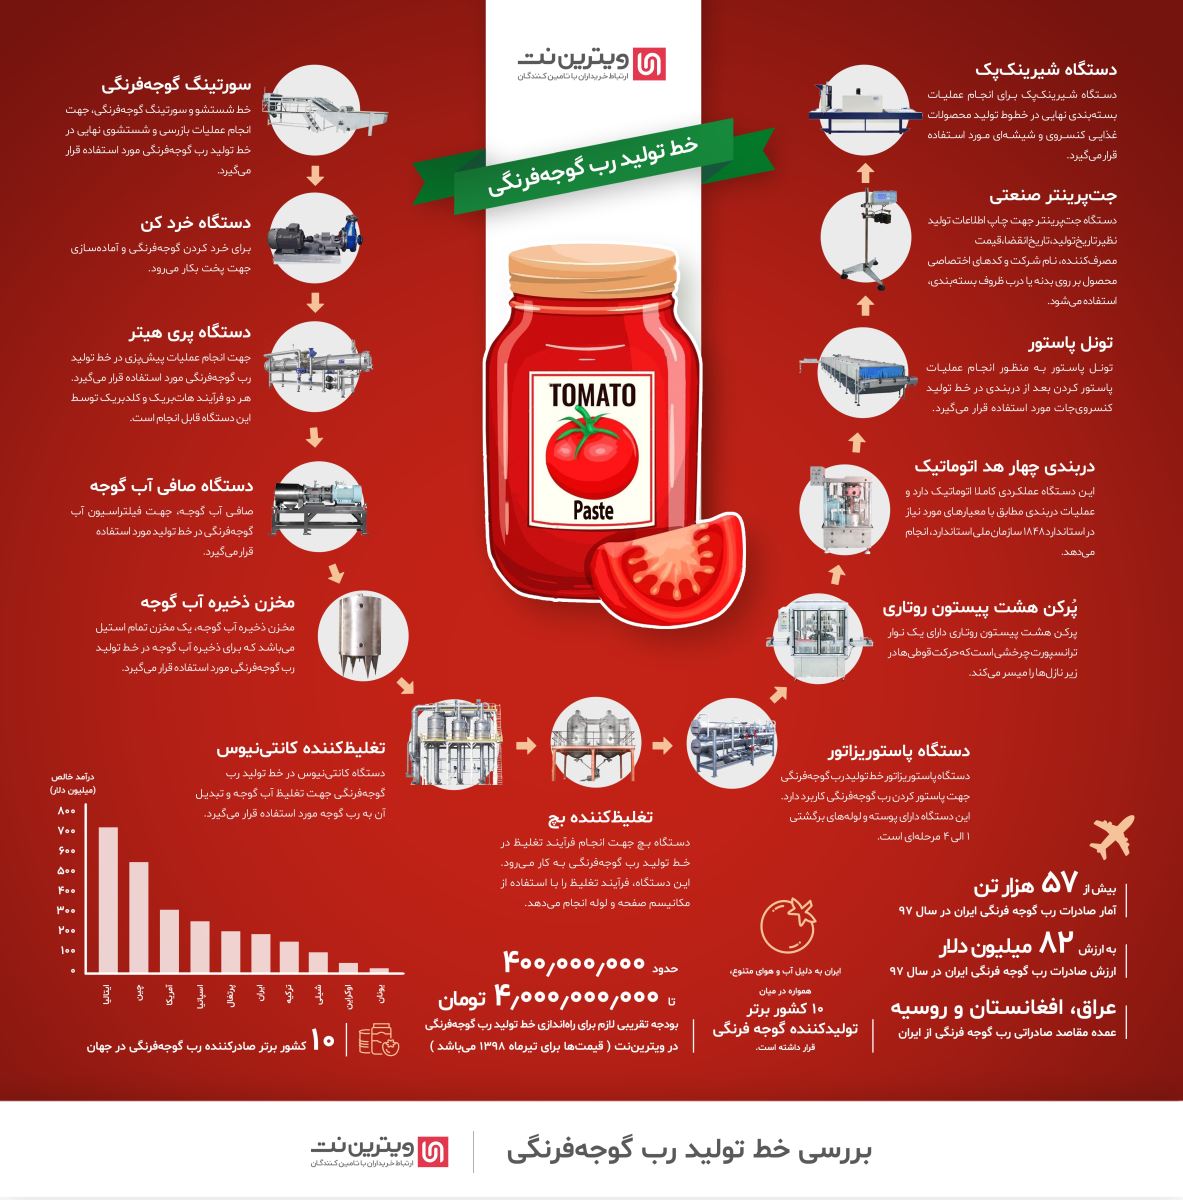 با توجه به مصرف زیاد رب گوجه فرنگی در ایران، راه اندازی خط تولید رب گوجه فرنگی می‌تواند سود زیادی به همراه داشته باشد.